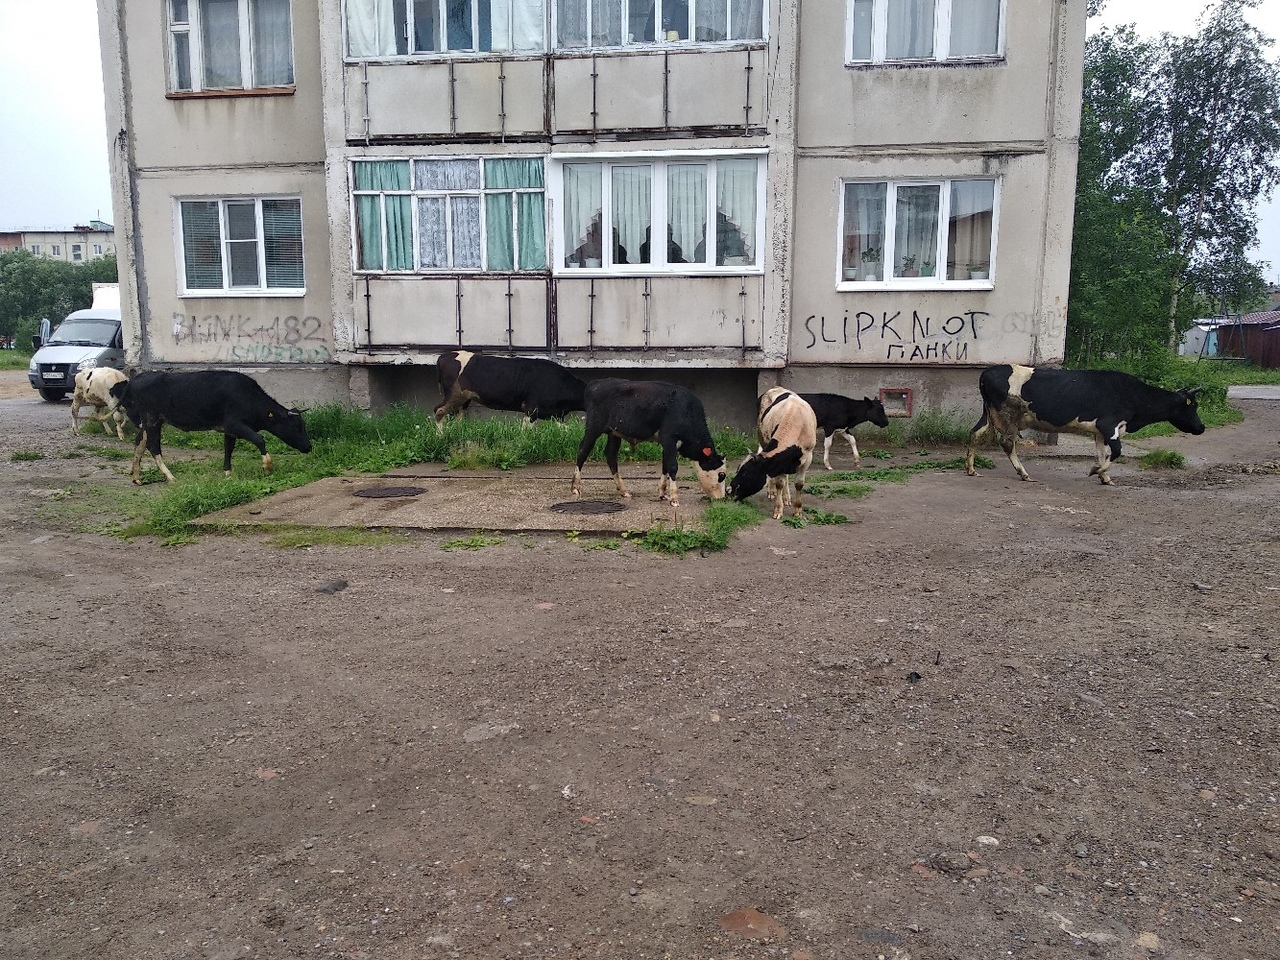 «Панки в городе»: жителей Коми насмешили коровы, которые гуляли под надписью «Slipknot»